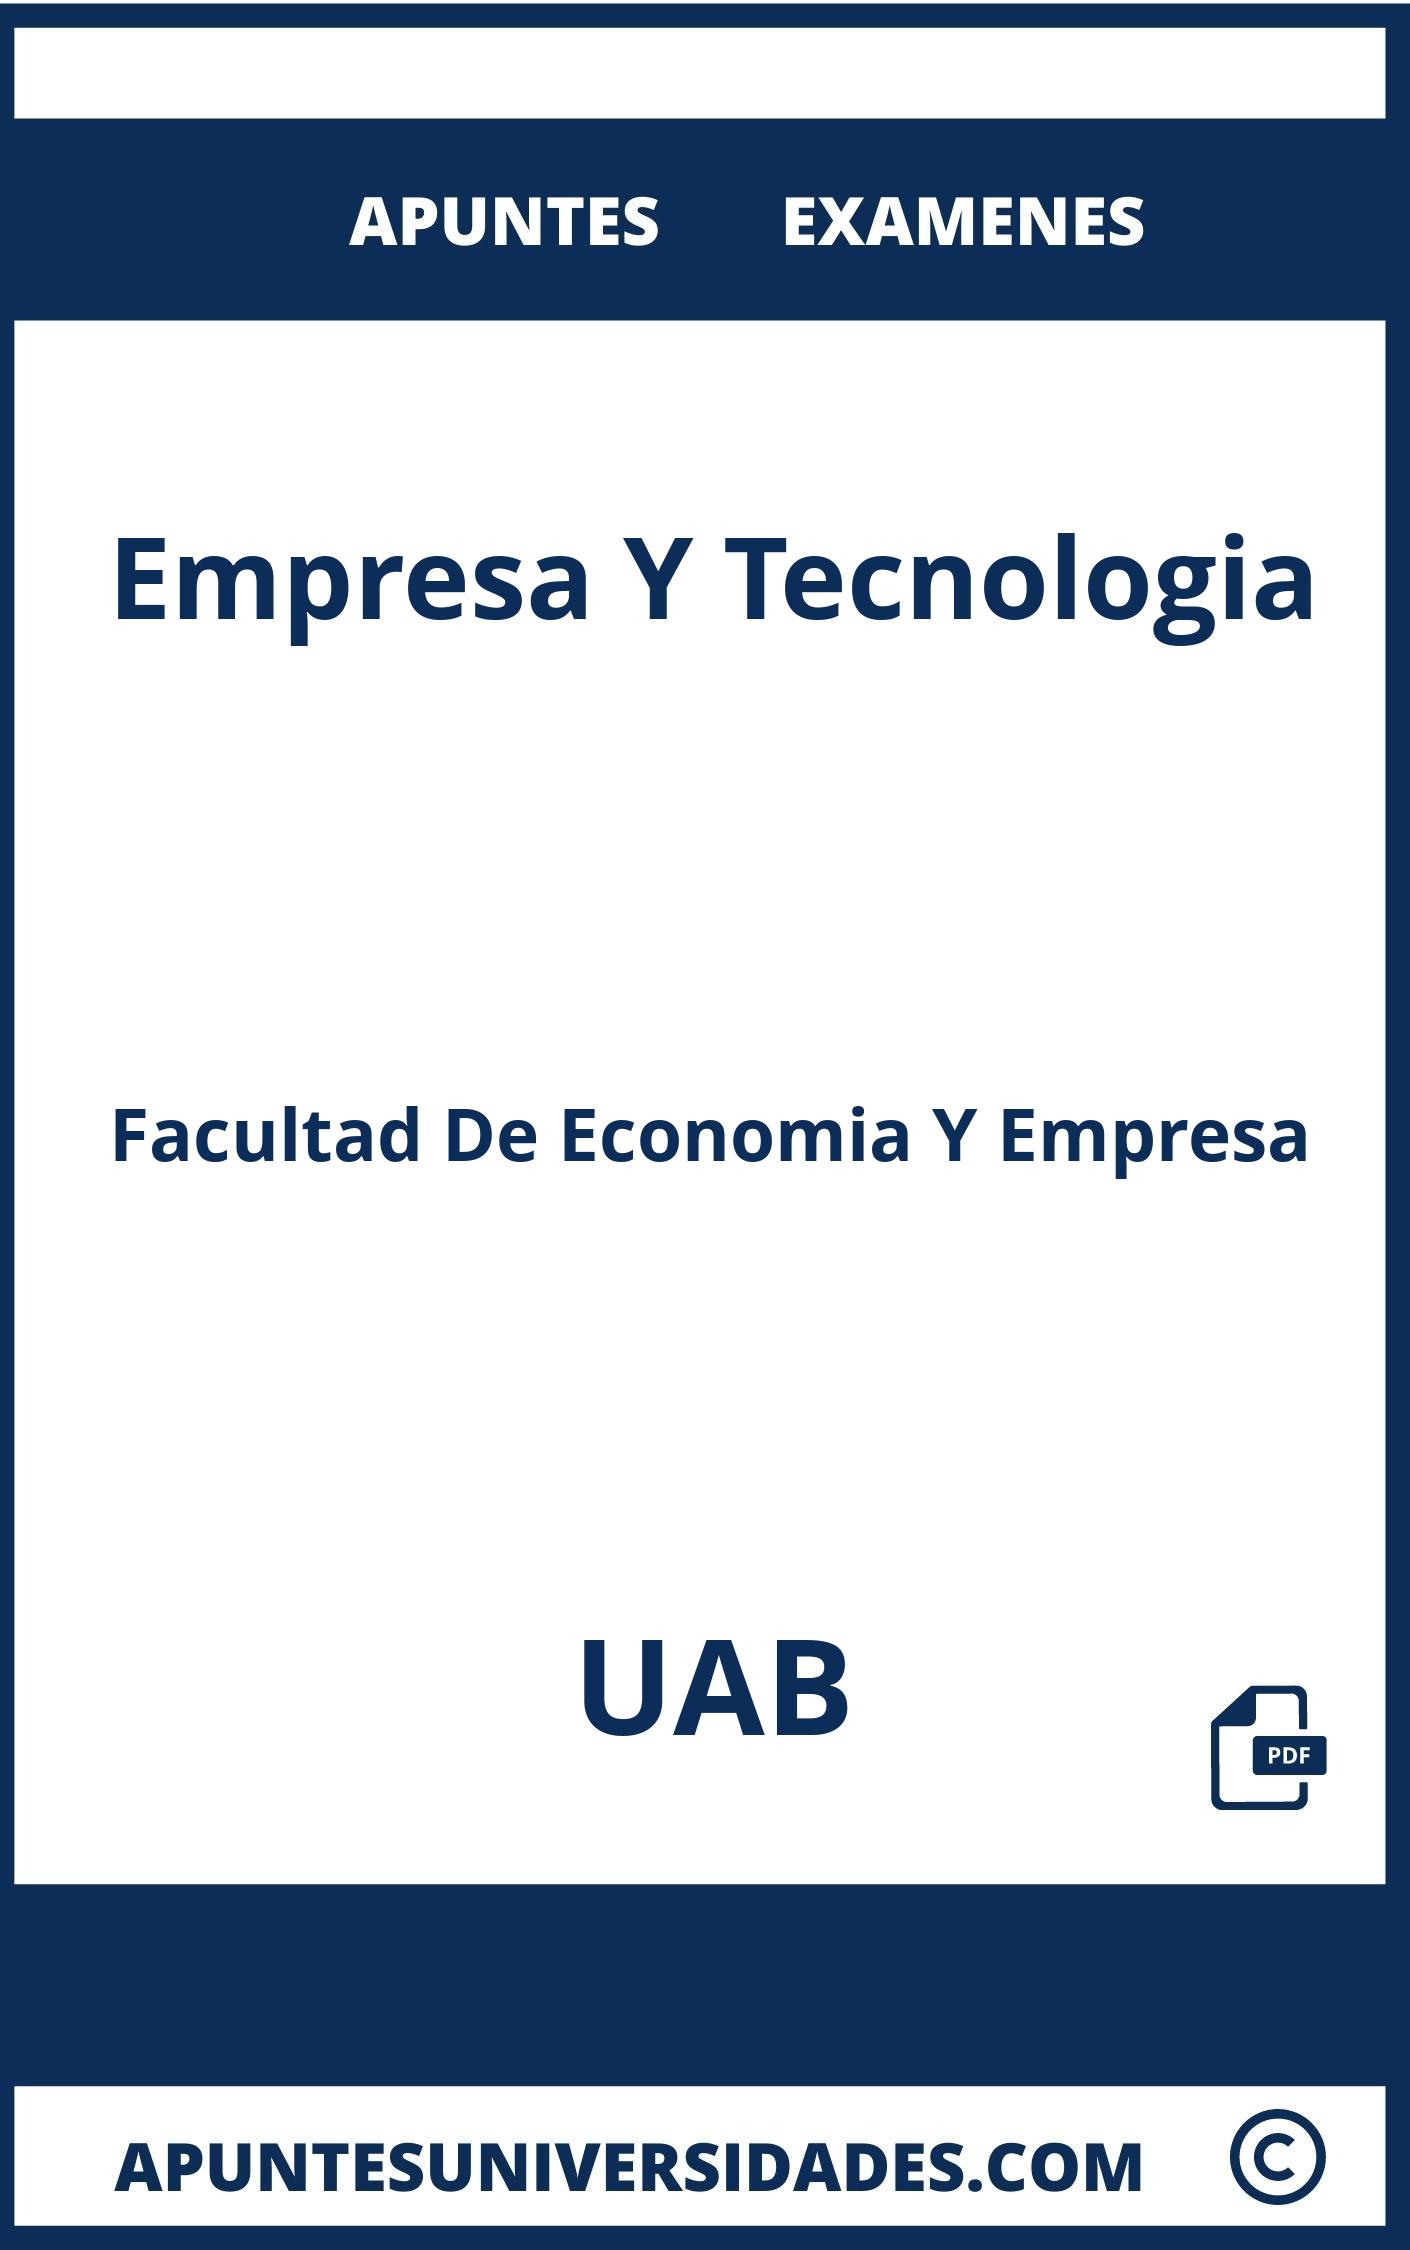 Apuntes y Examenes Empresa Y Tecnologia UAB